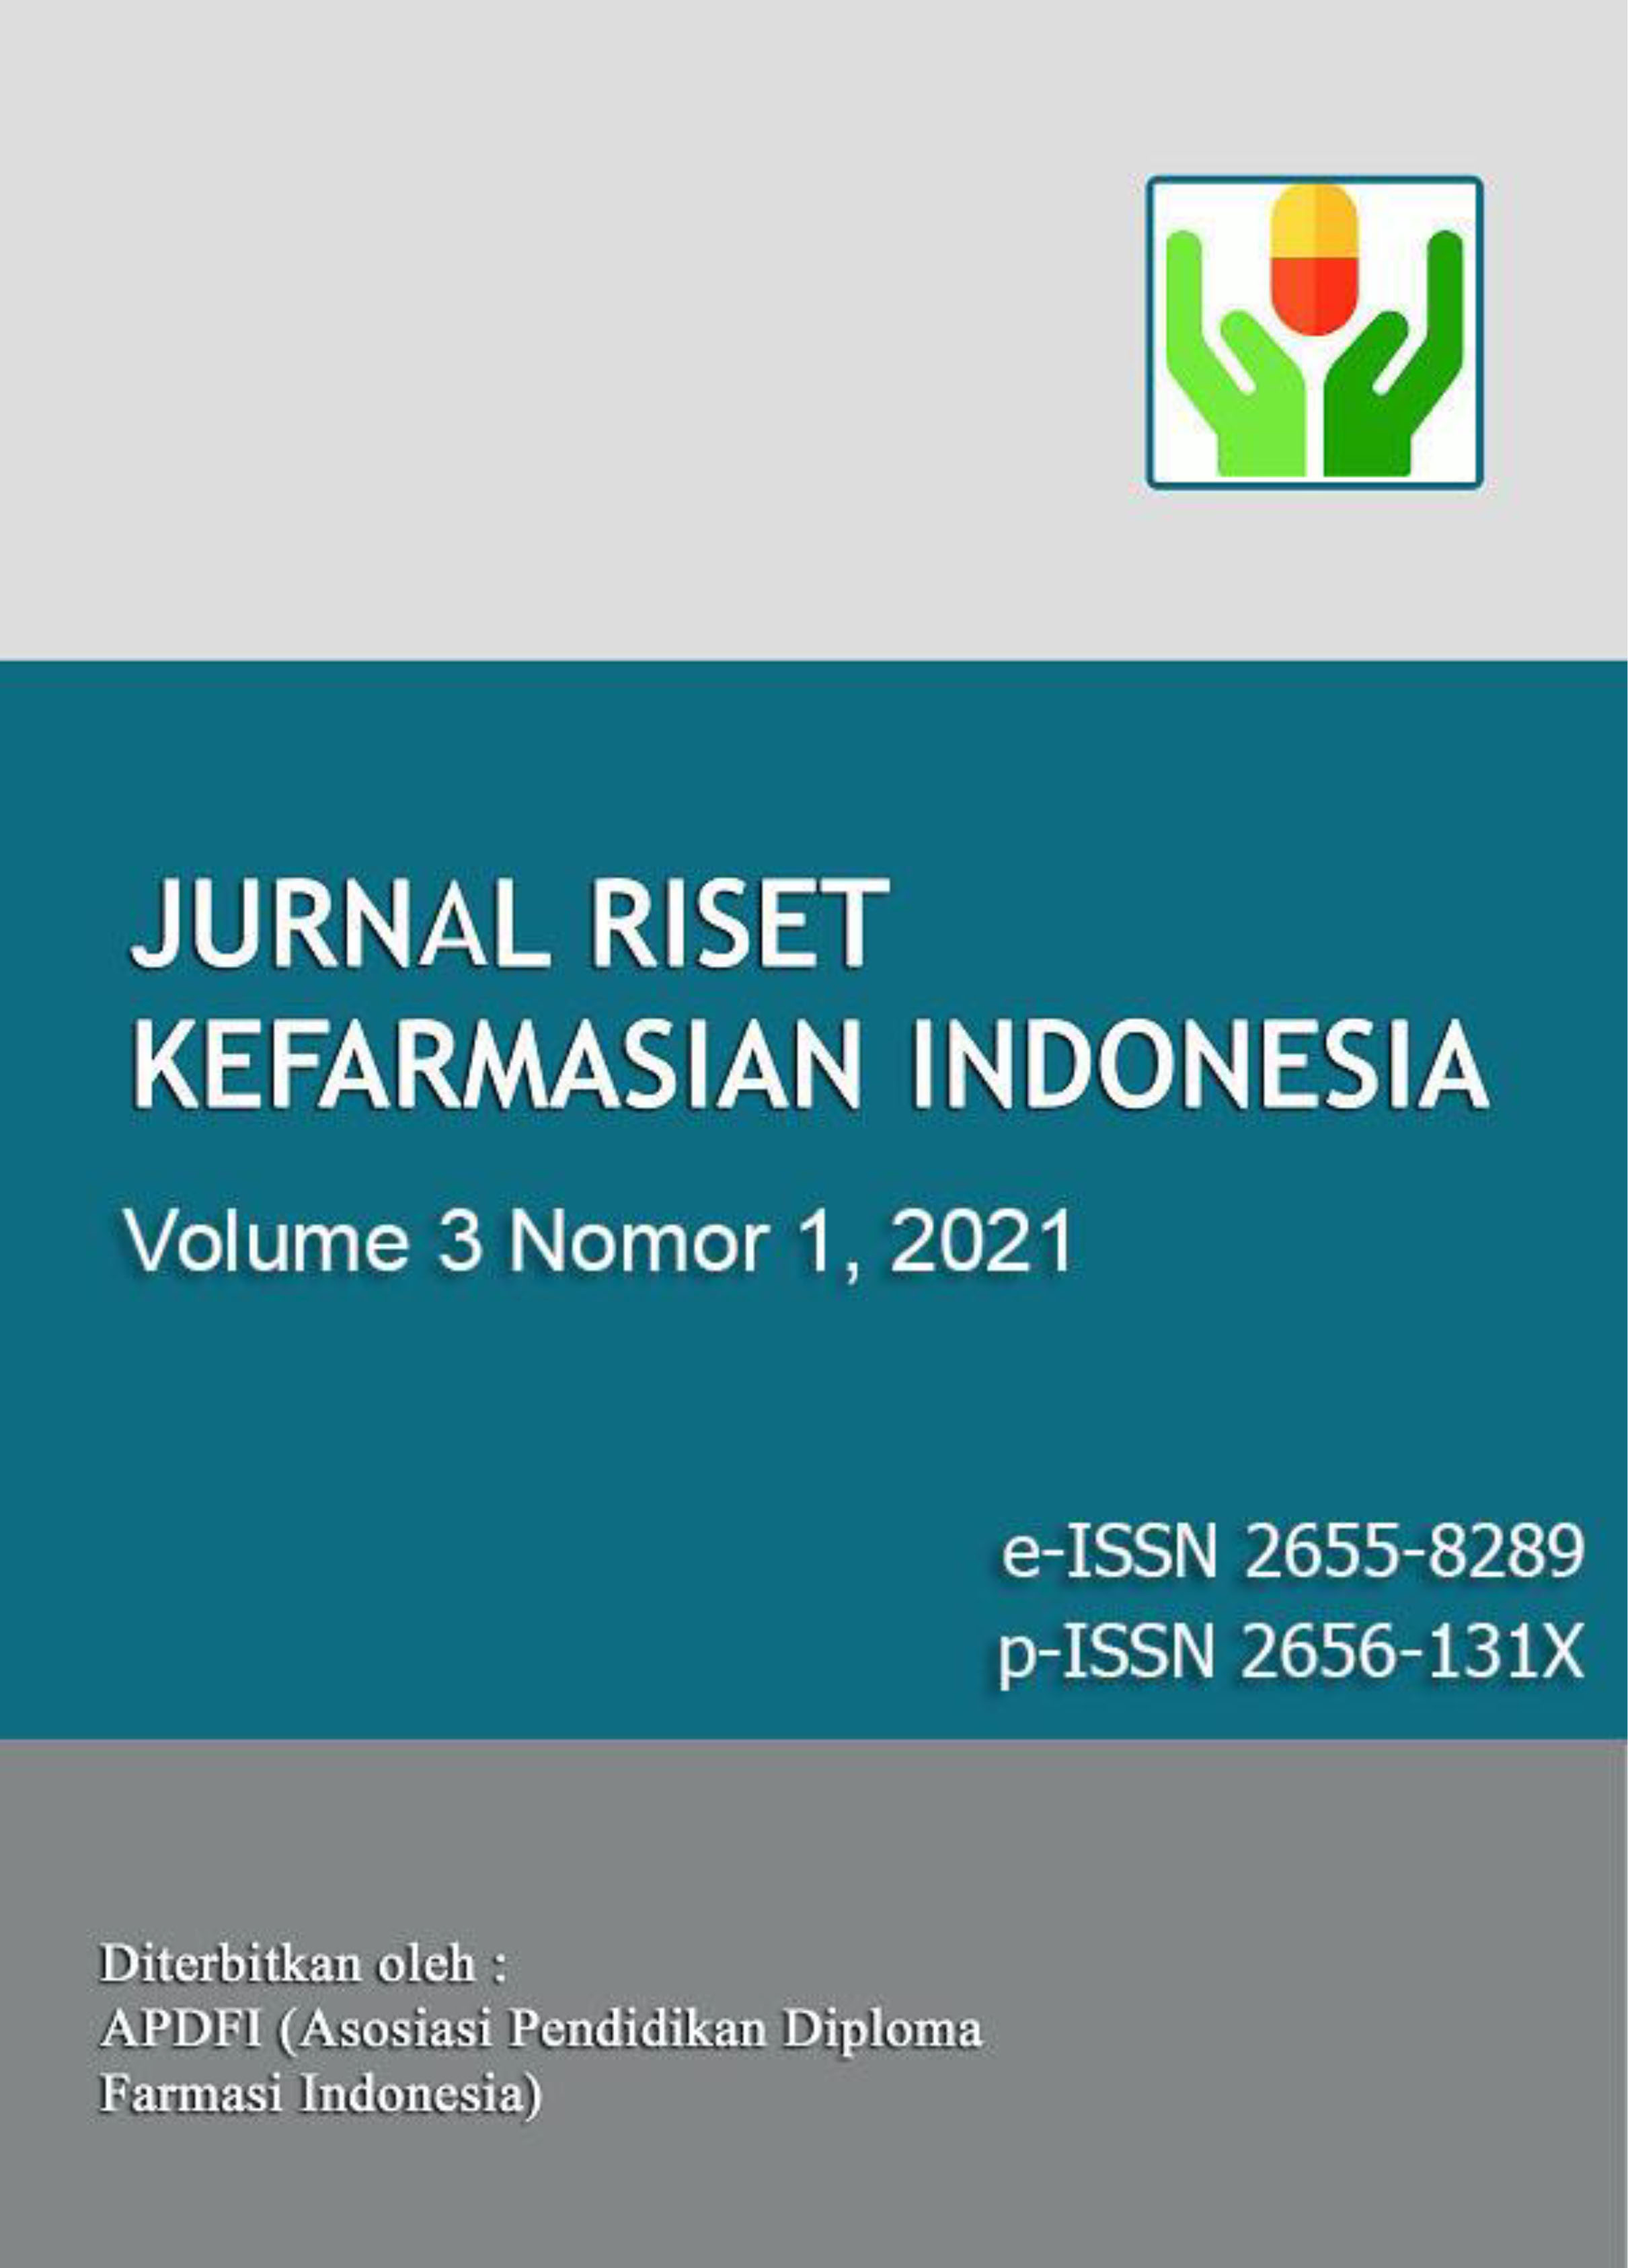 Jurnal Riset Kefarmasian Indonesia Vol. 3 Nomor 1 2021